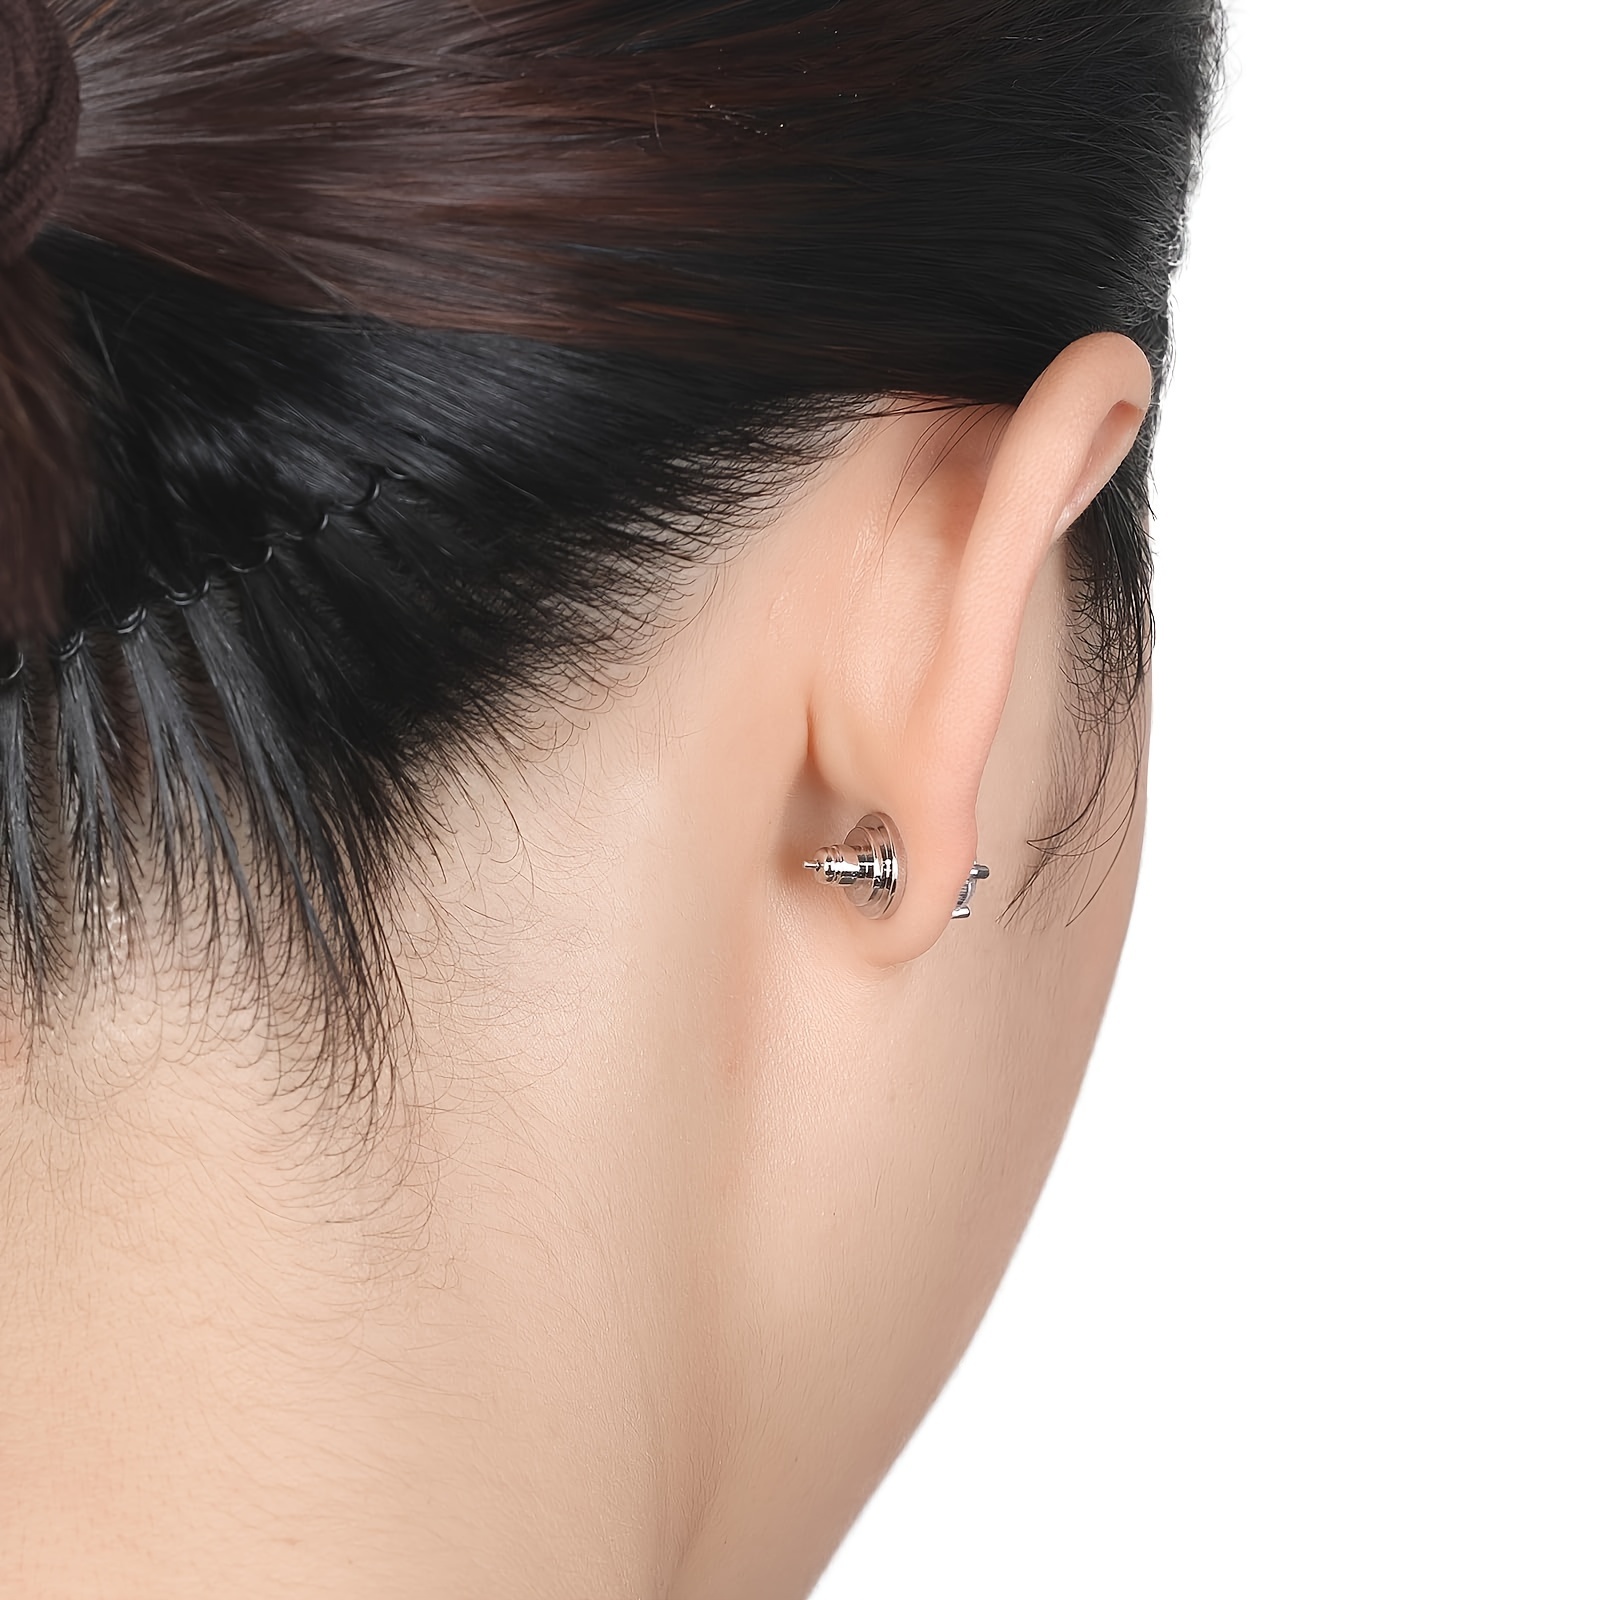 DSOMHZ Earring Backs,Earring Backs for Studs/Droopy Ears,150PCS Screw on Earring  Backs Earring Backings Earring Backs for Heavy Earring